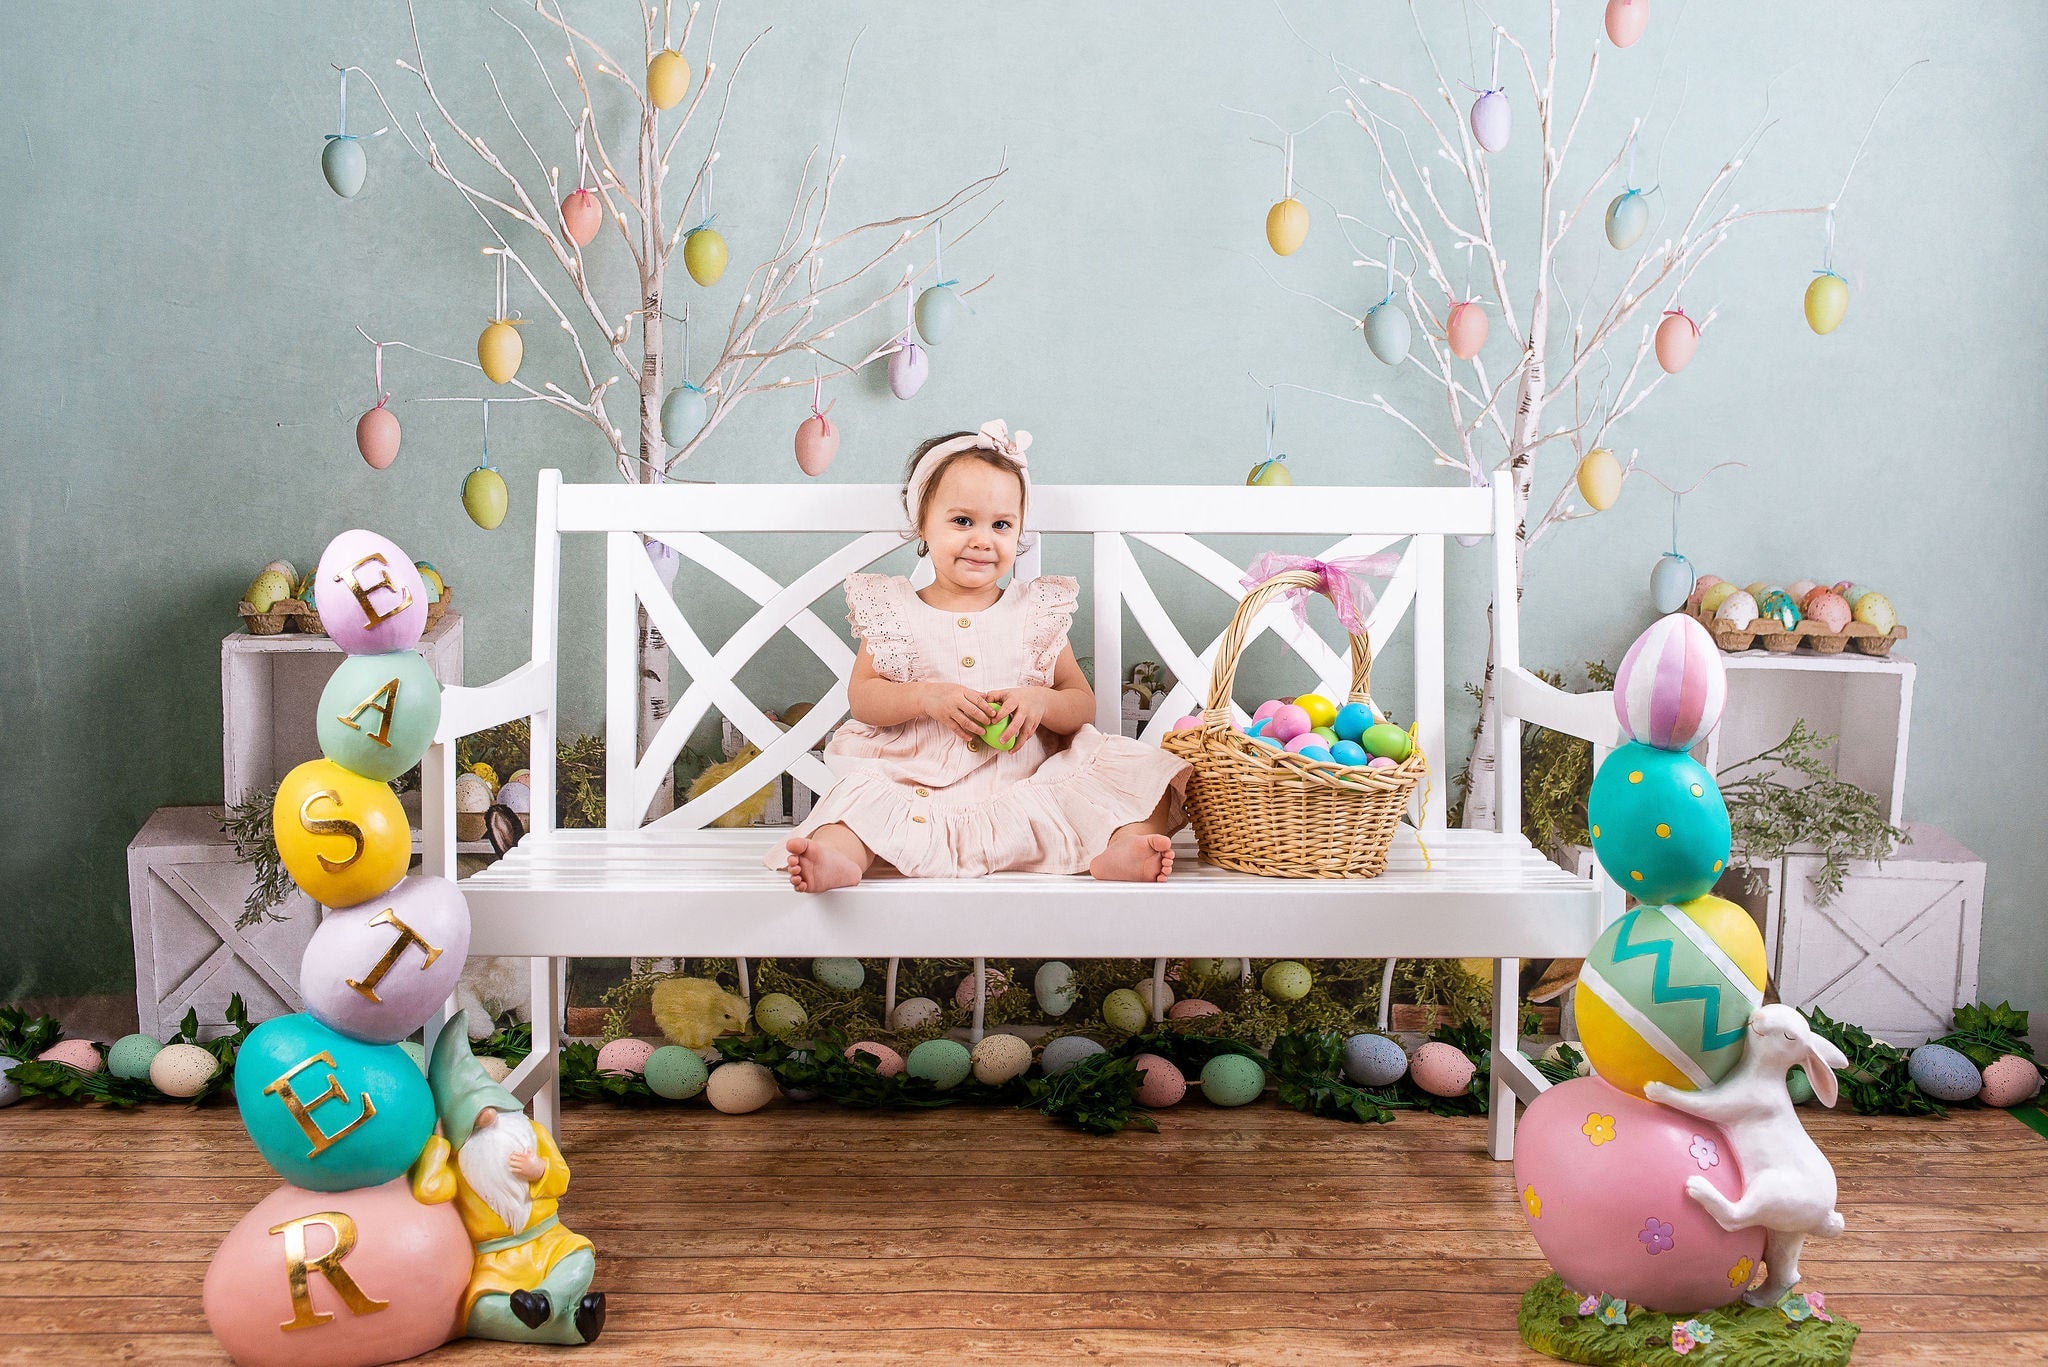 Kate Osterei Bäume Ostern Häschen Frühling  Hintergrund Entworfen von Mandy Ringe Photography